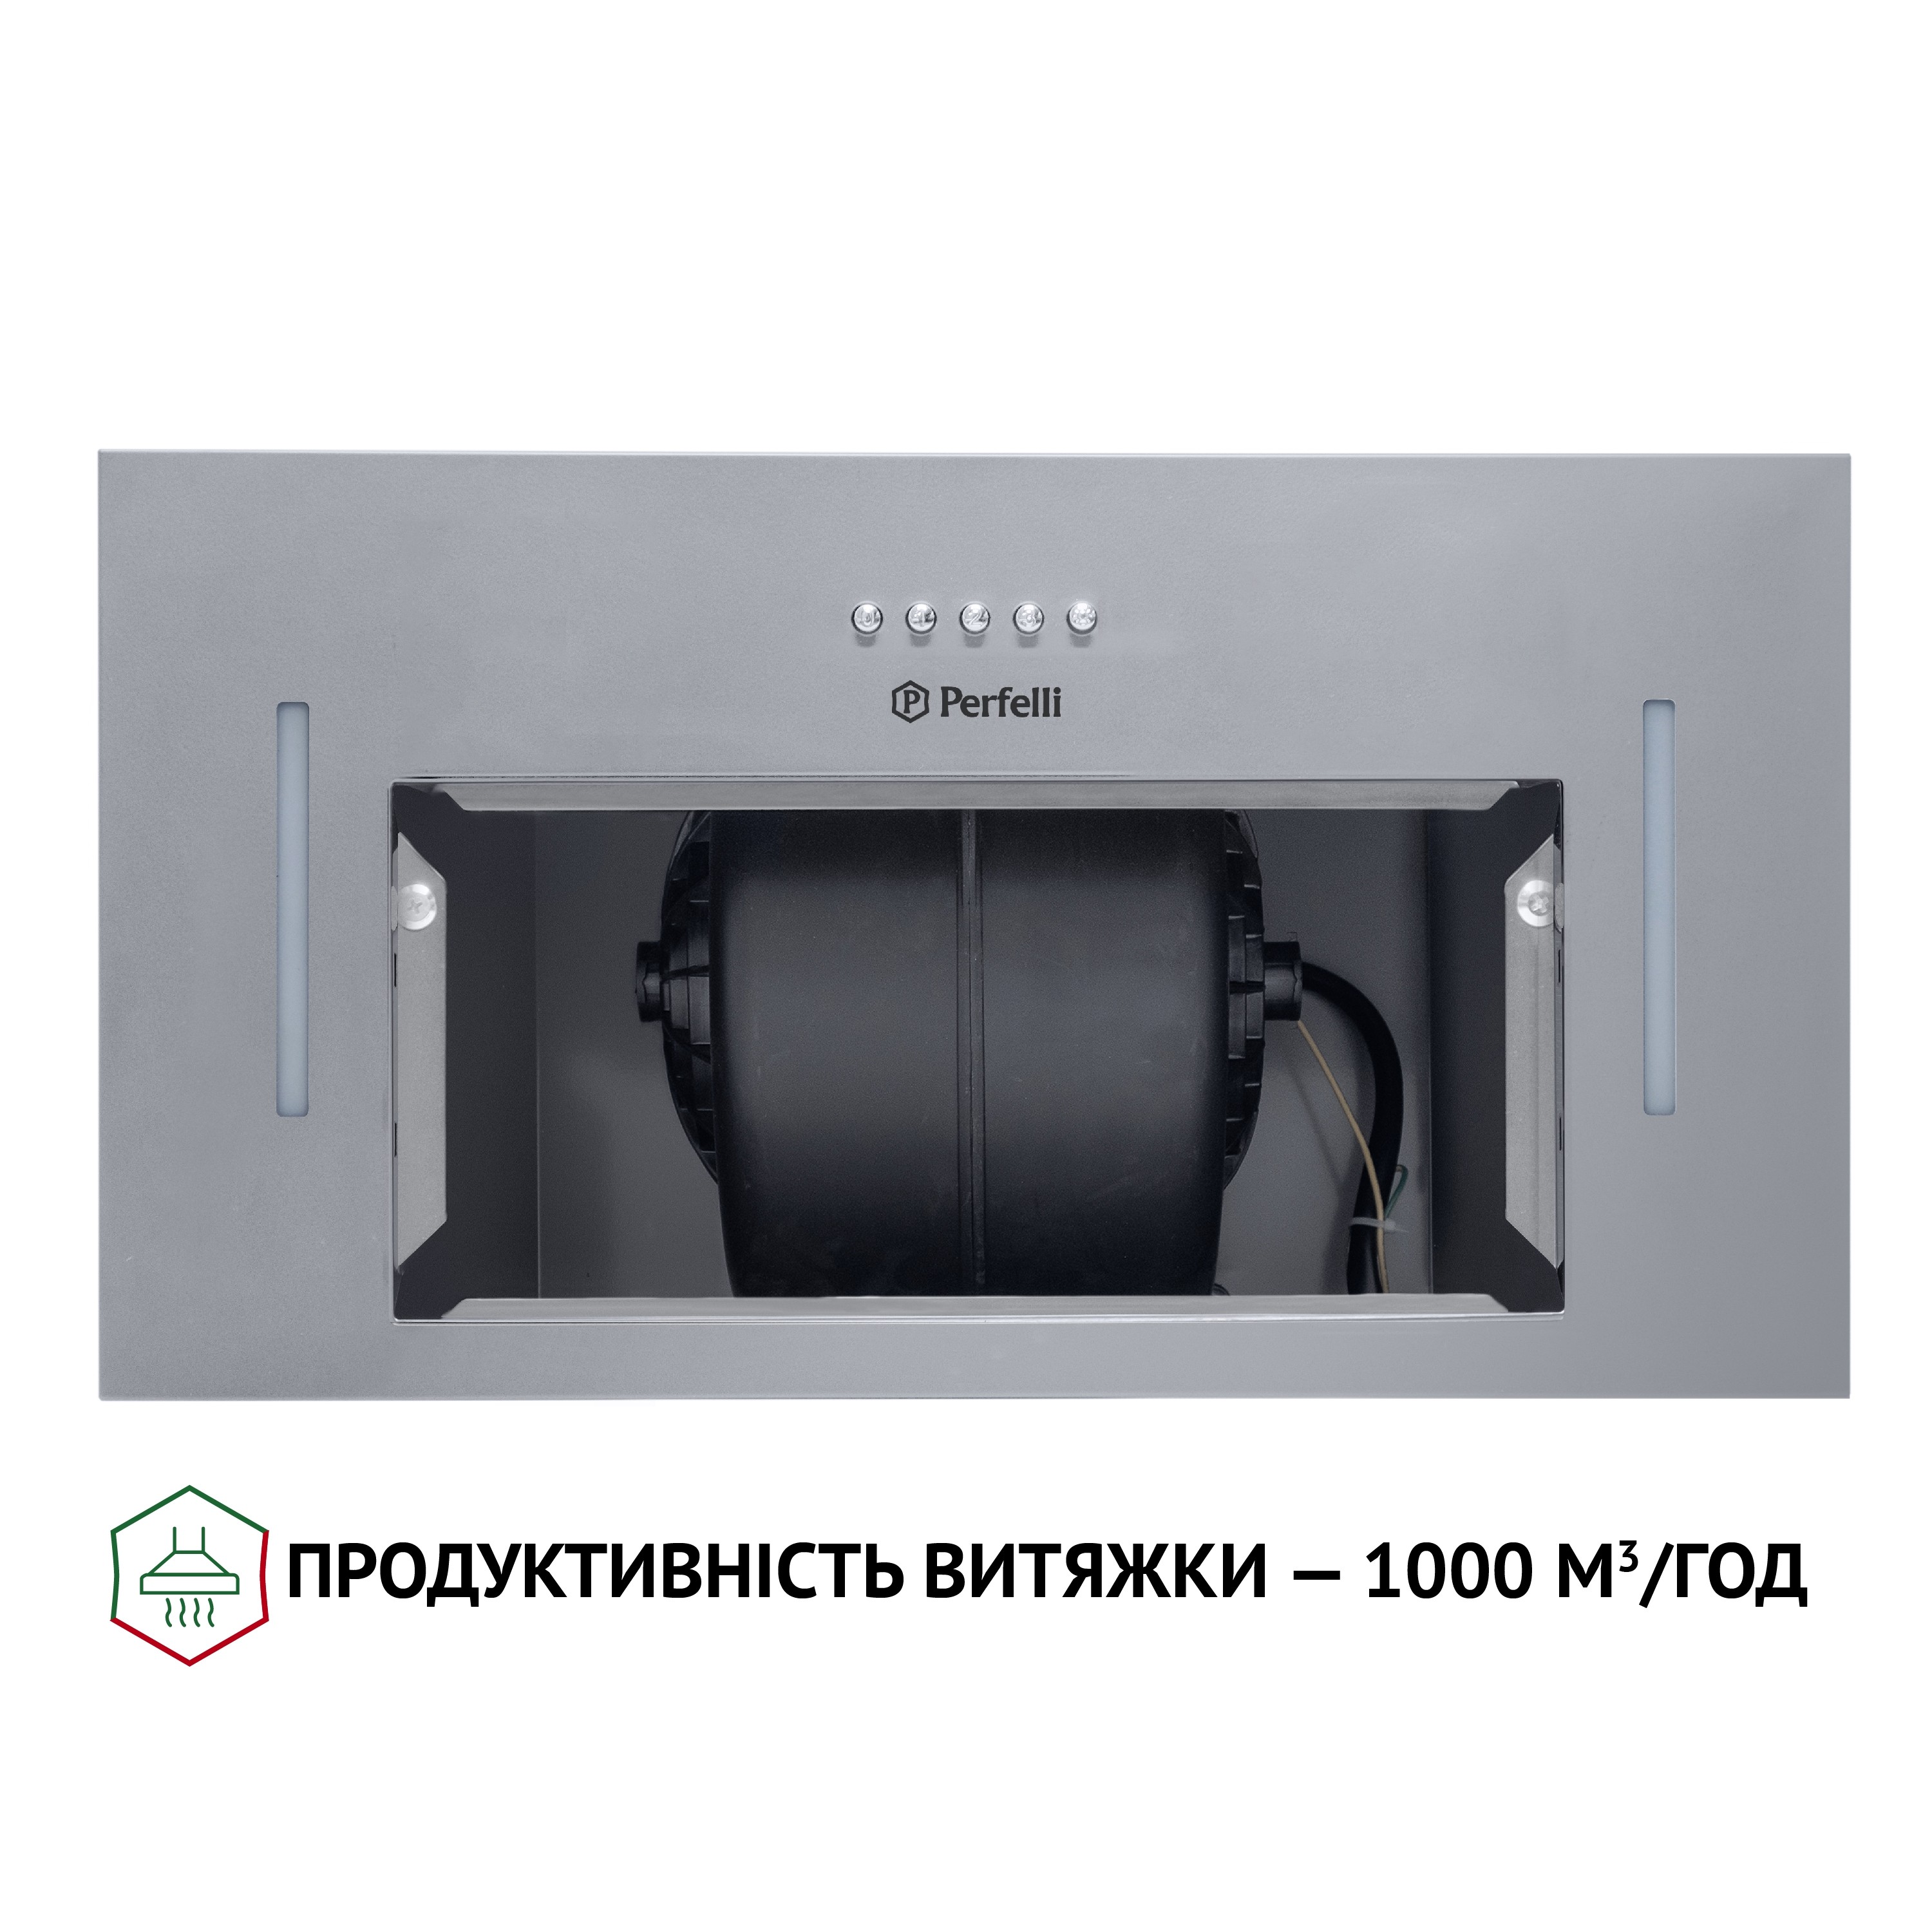 Кухонна витяжка Perfelli BI 5653 I 1000 LED характеристики - фотографія 7